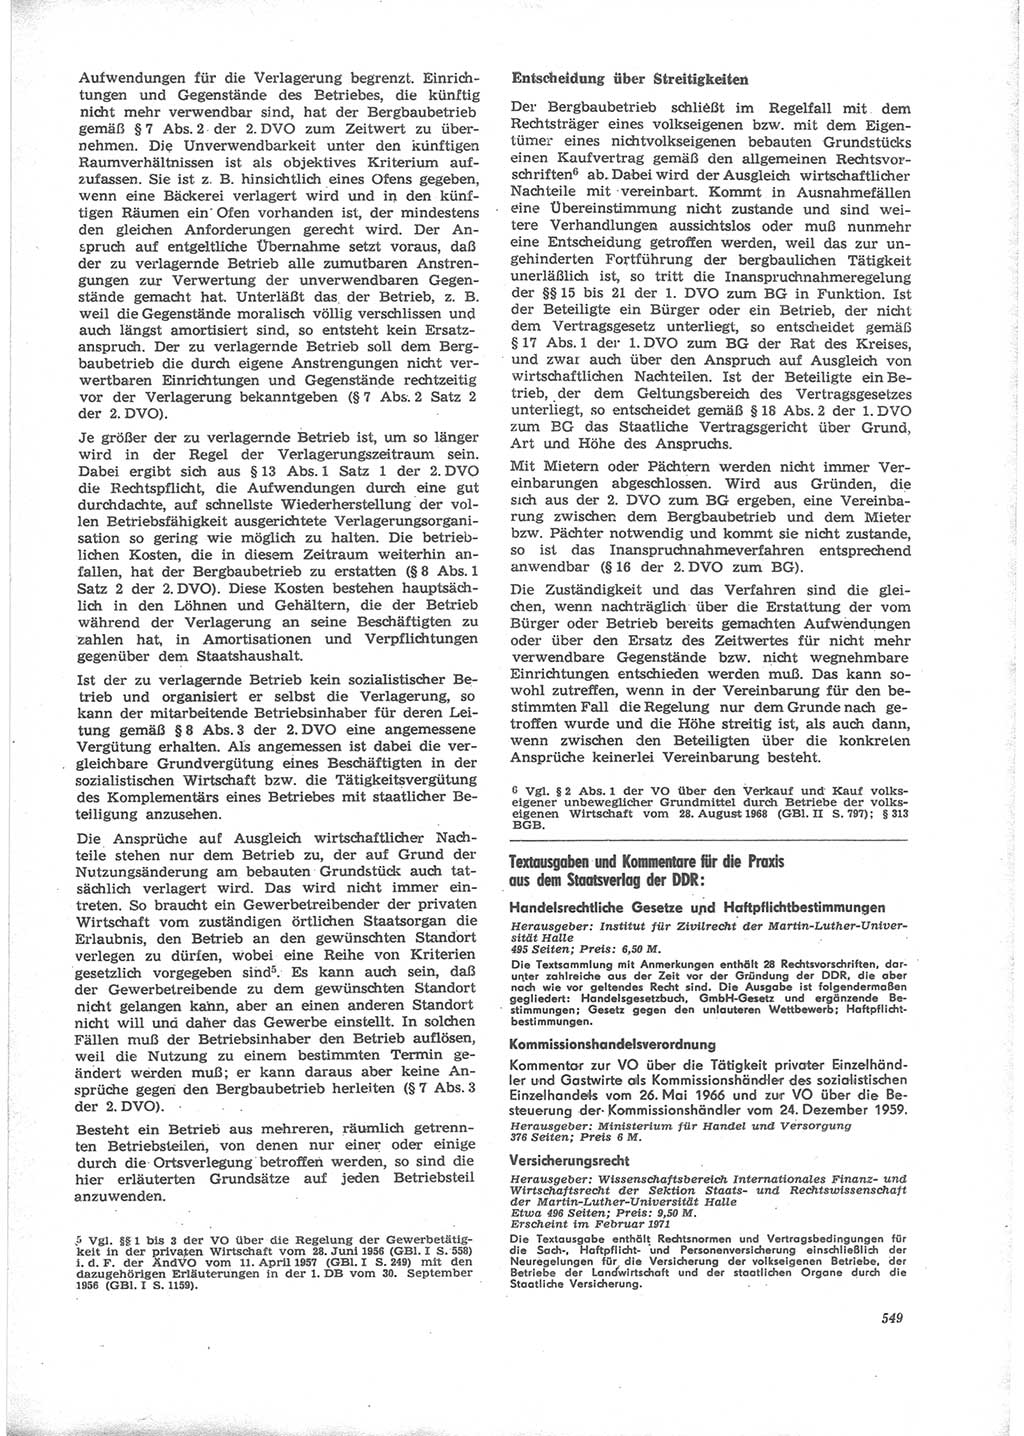 Neue Justiz (NJ), Zeitschrift für Recht und Rechtswissenschaft [Deutsche Demokratische Republik (DDR)], 24. Jahrgang 1970, Seite 549 (NJ DDR 1970, S. 549)